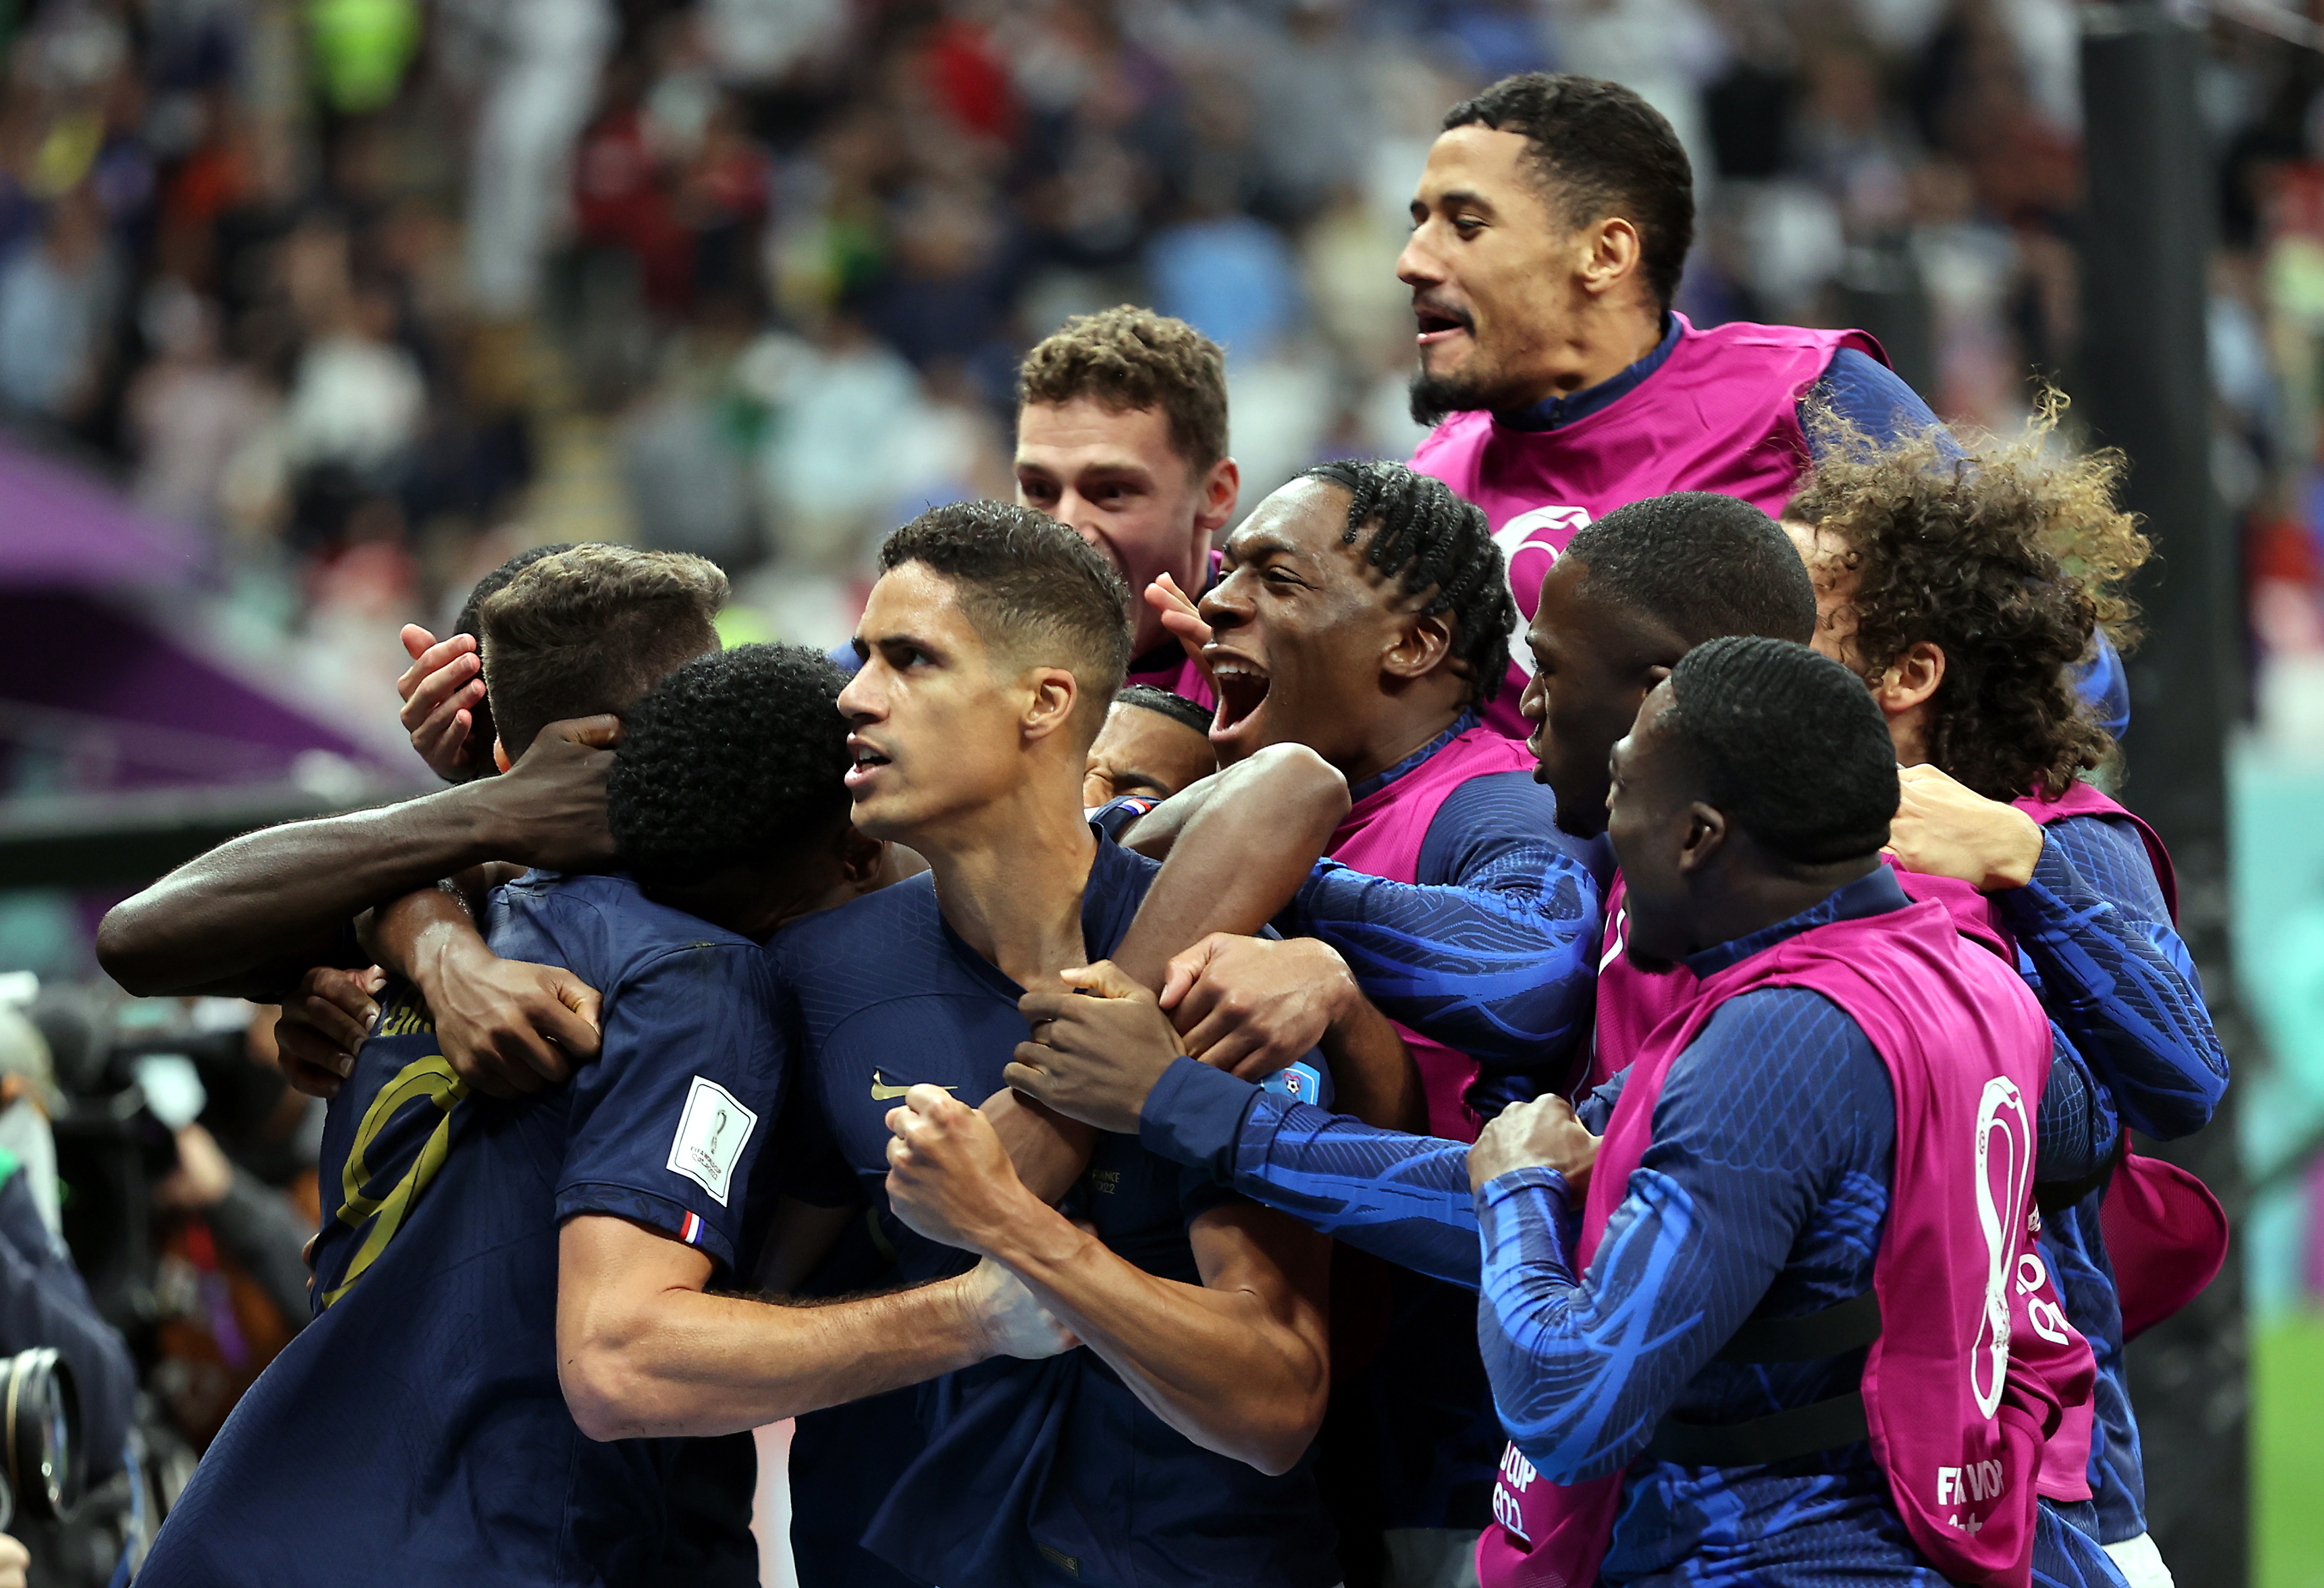 La algarabía se vivió al máximo en el plantel francés tras el gol del triunfo de Olivier Giroud. (Foto Prensa Libre: EFE)